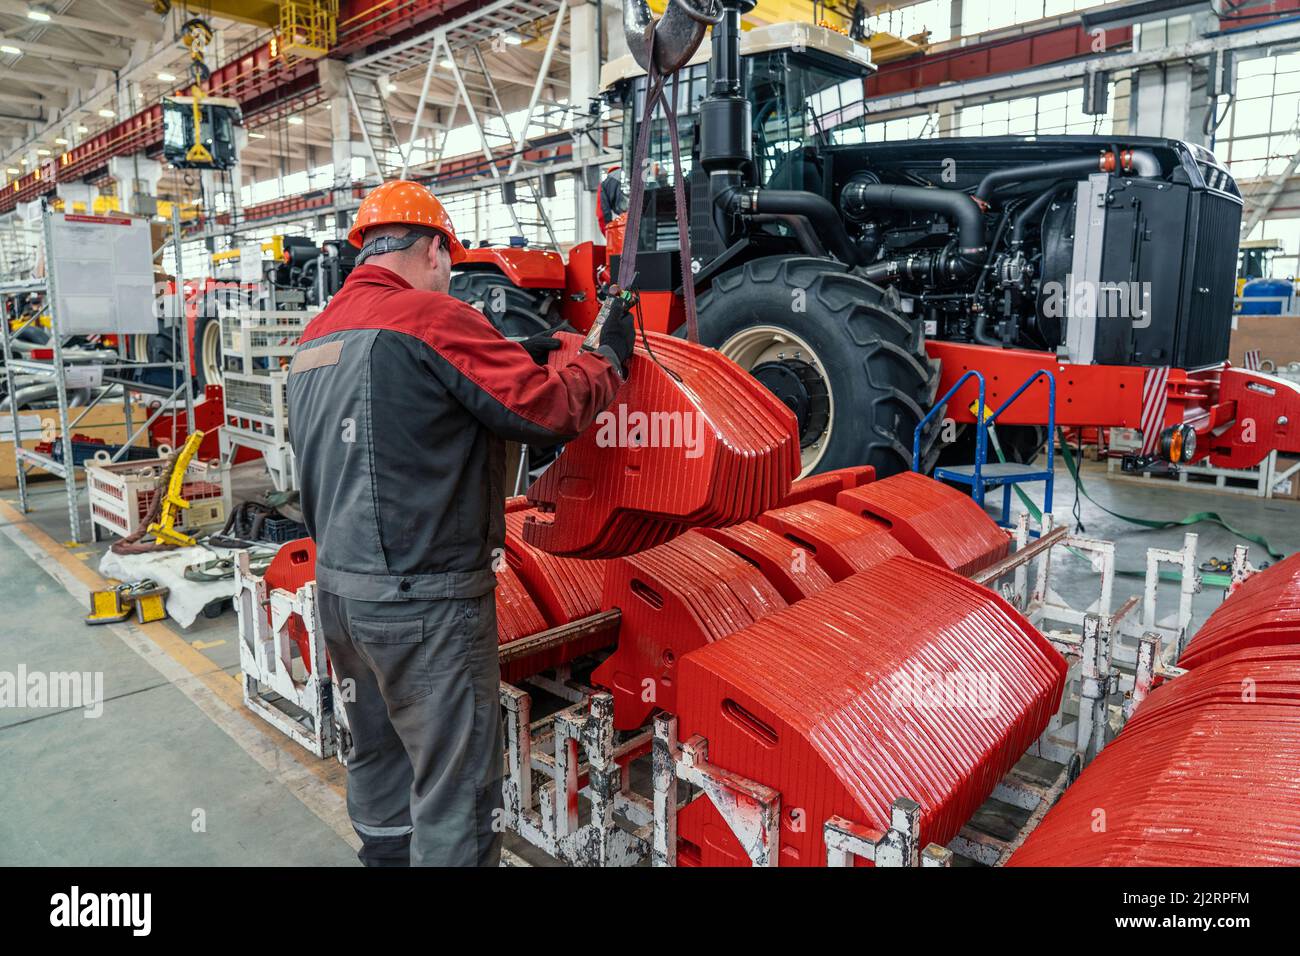 Un travailleur industriel assemble en usine de l'équipement agricole dans la chaîne de production de tracteurs ou de moissonneuses-batteuses. Banque D'Images